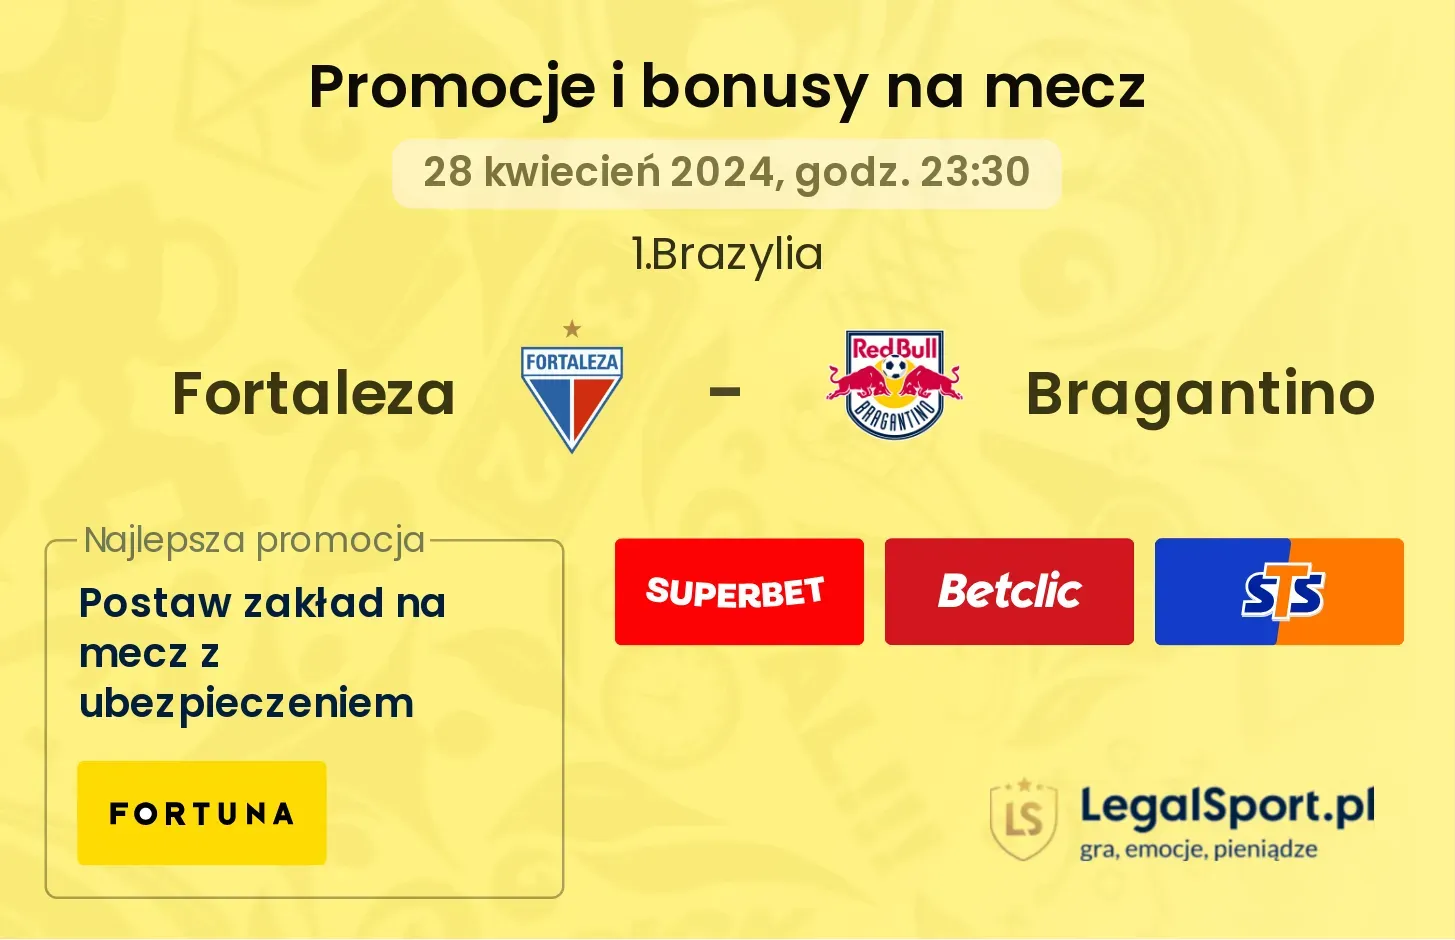 Fortaleza - Bragantino promocje bonusy na mecz